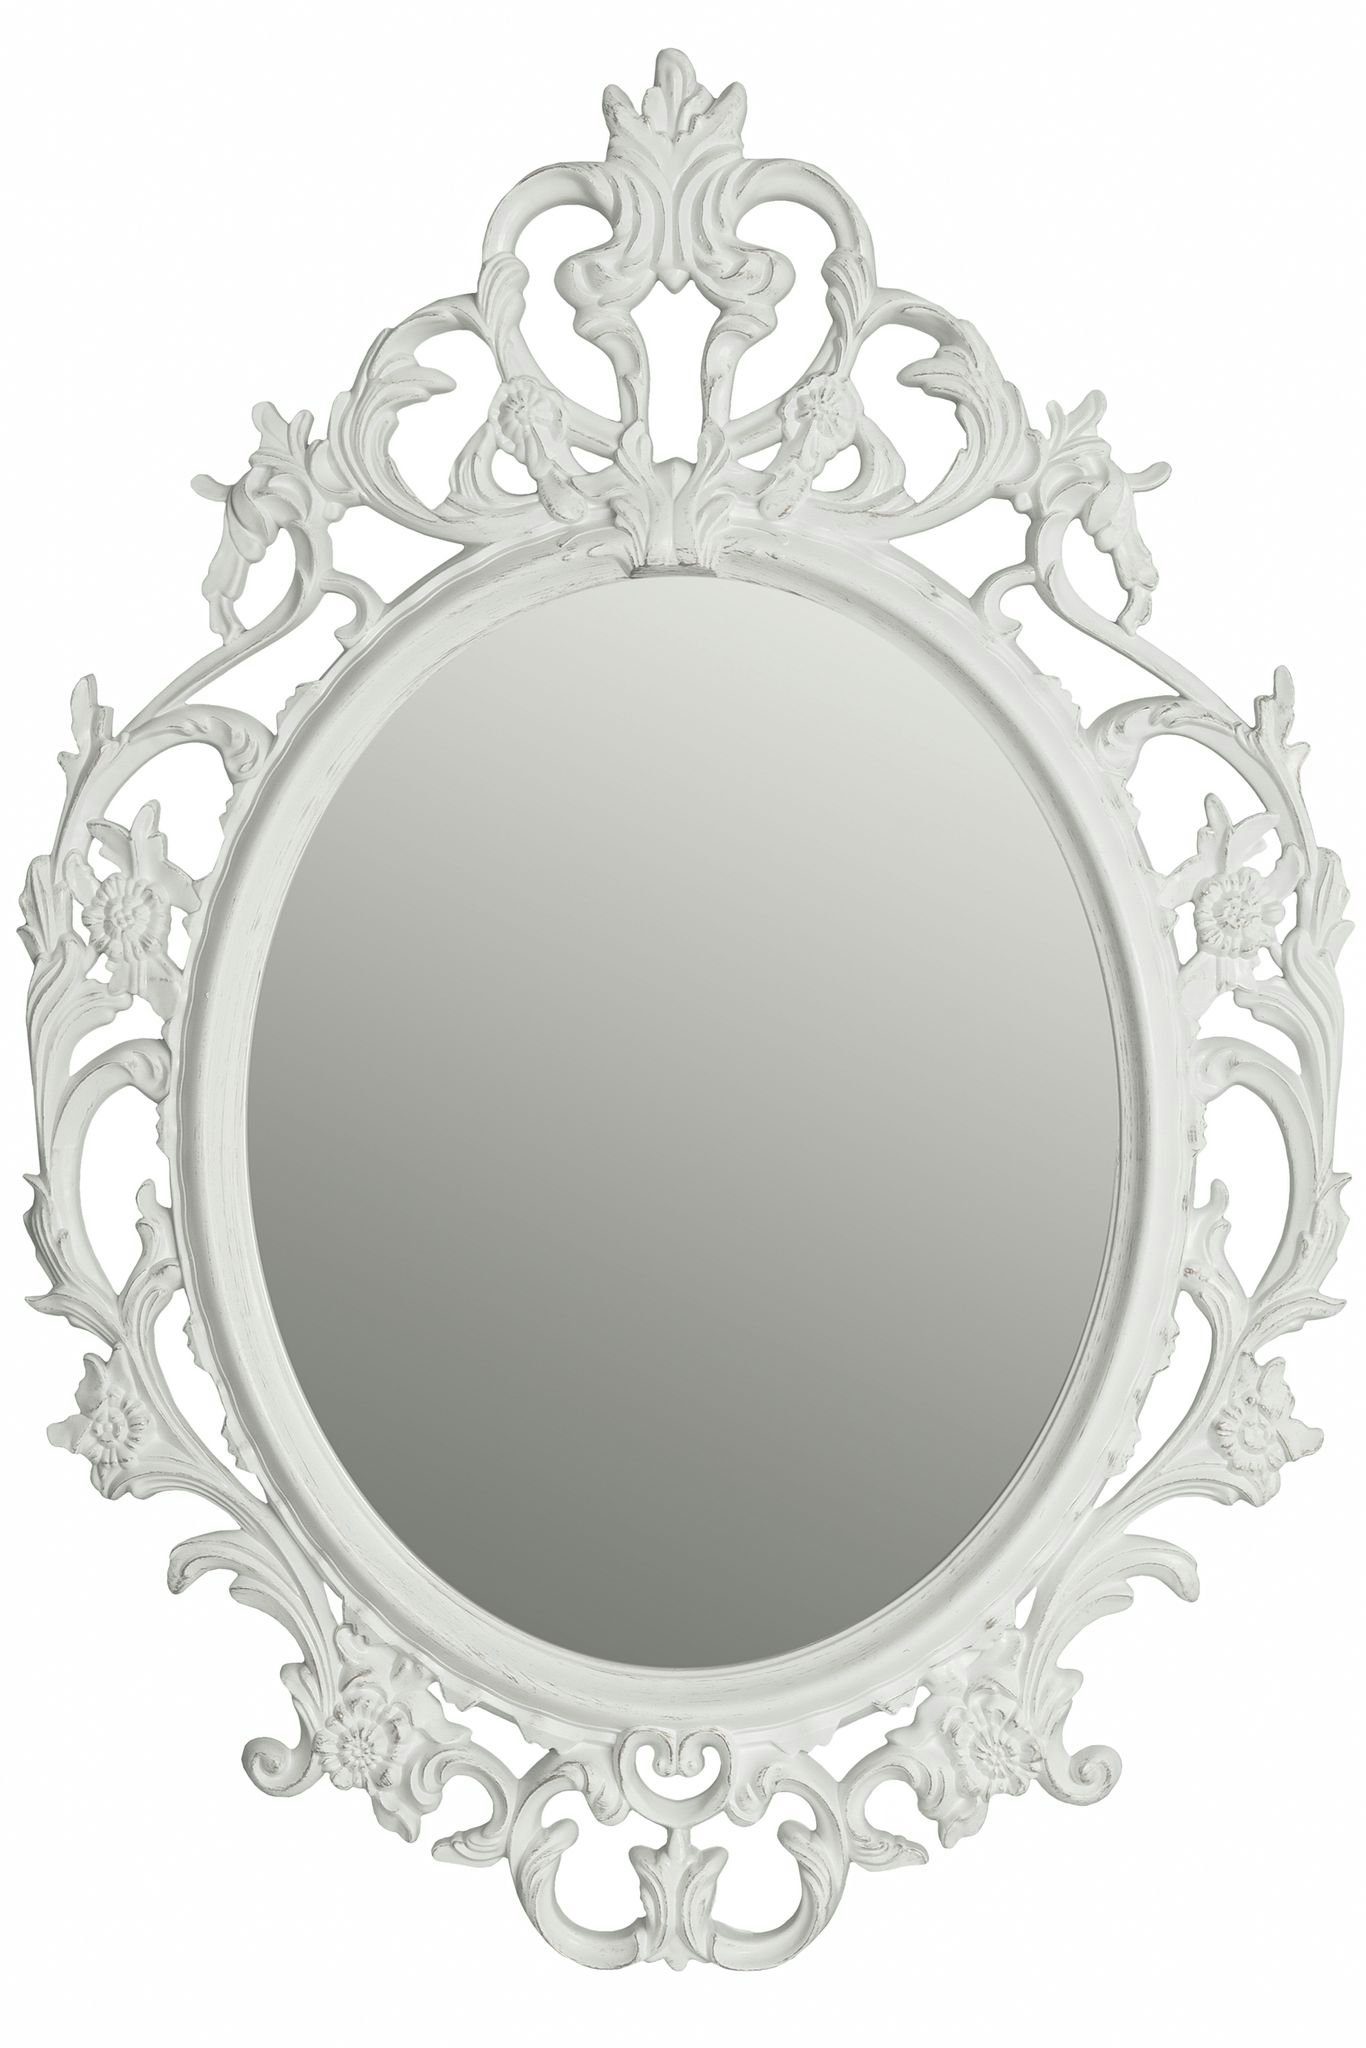 elbmöbel Wandspiegel »Spiegel Oval Barock weiß Barockspiegel«, Spiegel  barock weiß Wandspiegel oval Barockspiegel Badspiegel